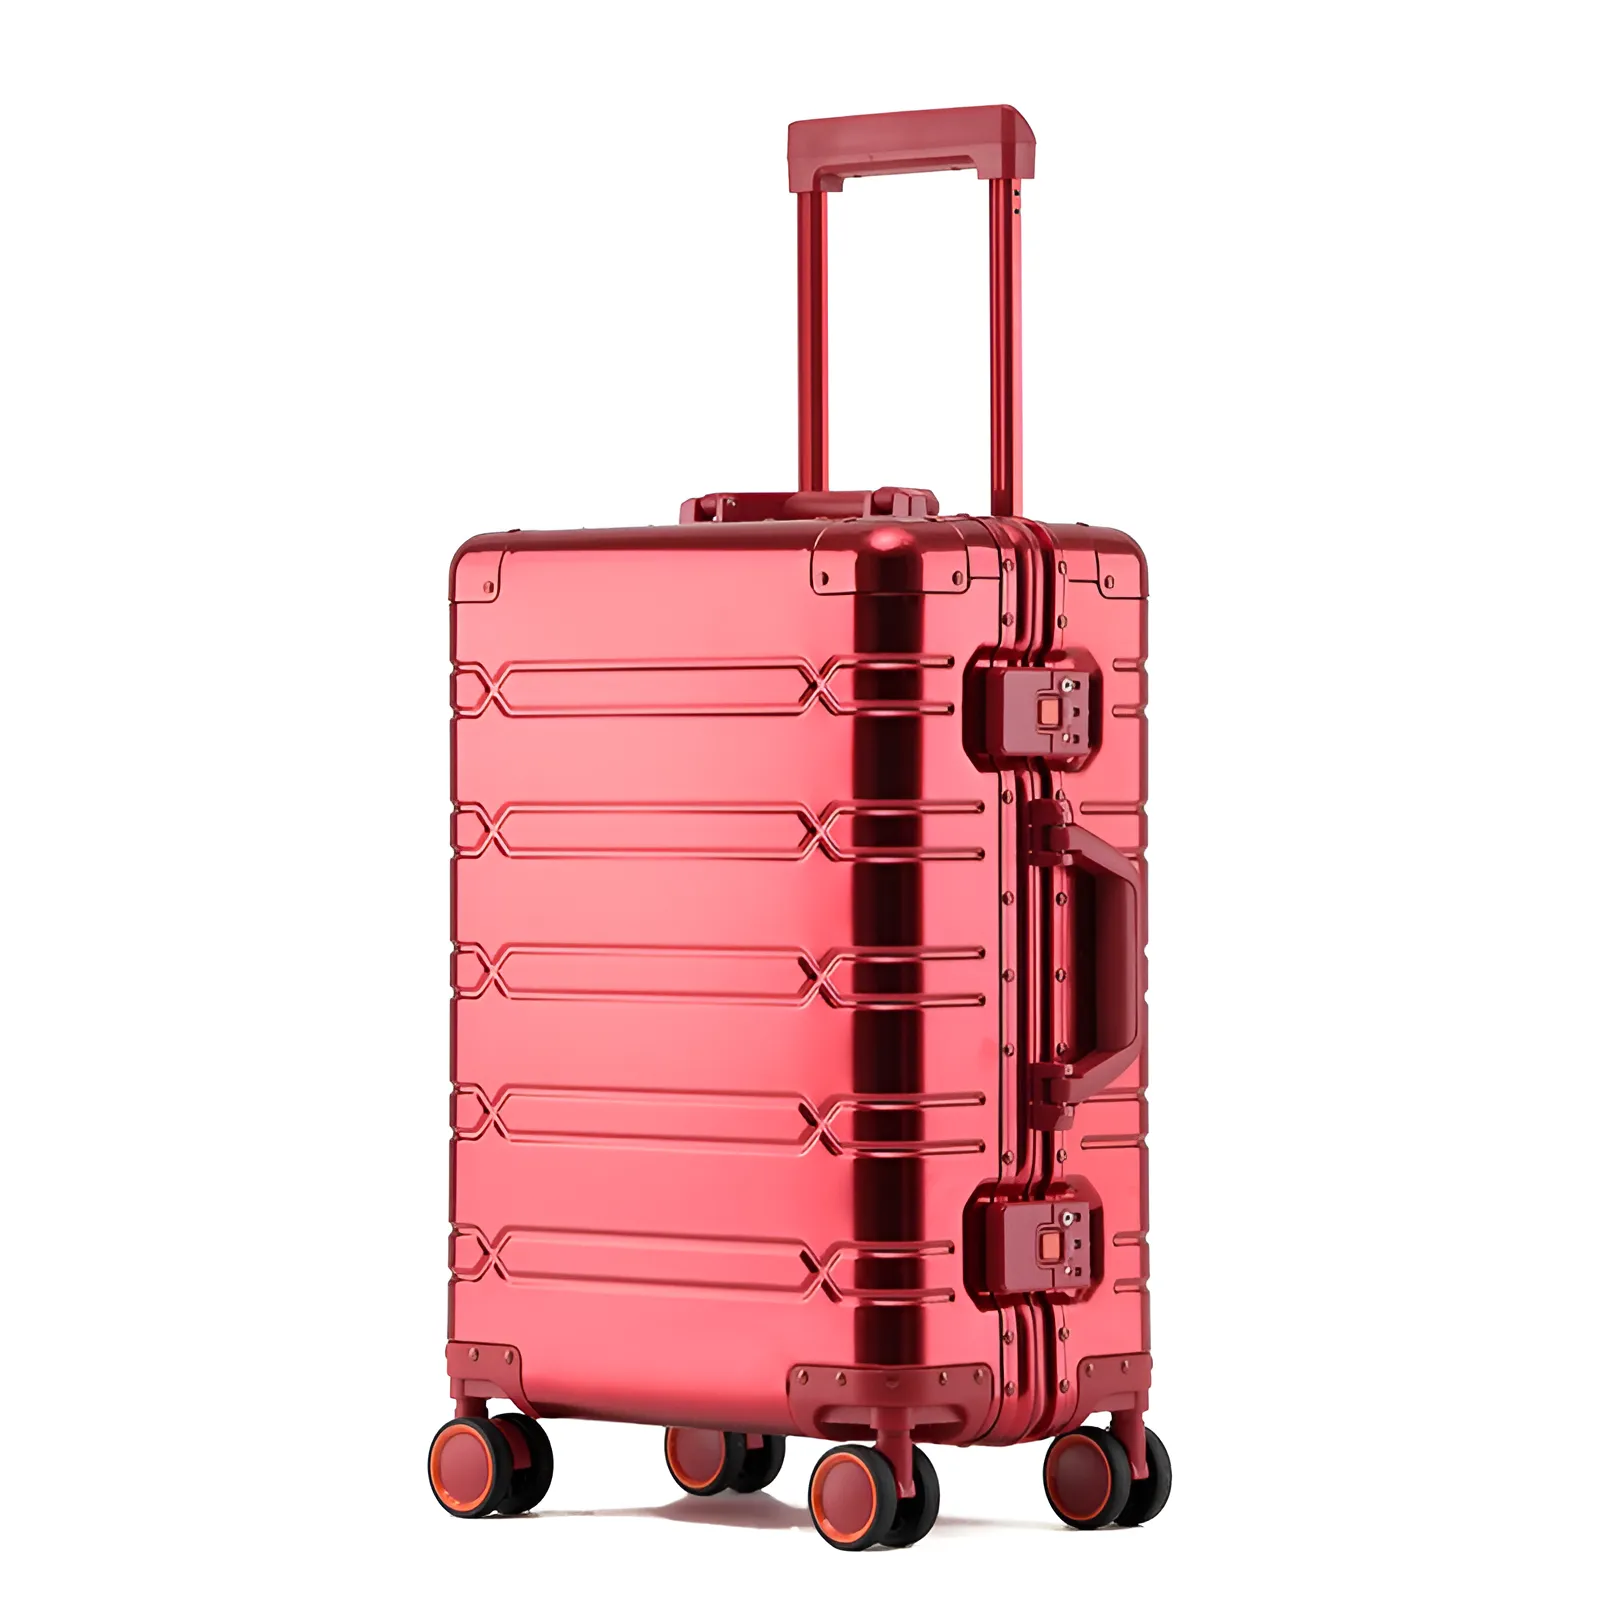 The Explorer Aluminum Suitcase Red